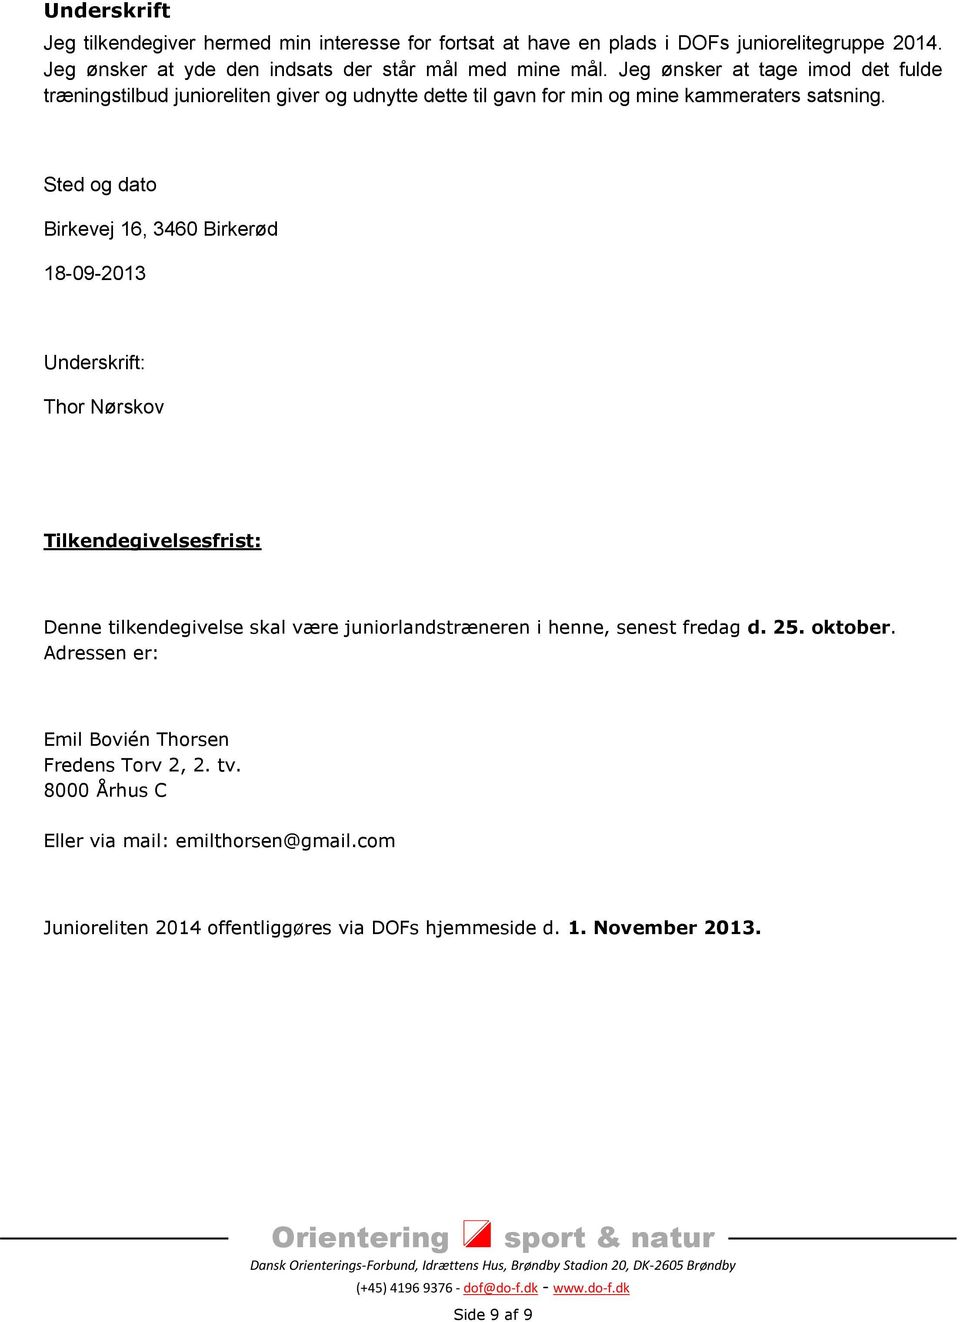 Sted og dato Birkevej 16, 3460 Birkerød 18-09-2013 Underskrift: Thor Nørskov Tilkendegivelsesfrist: Denne tilkendegivelse skal være juniorlandstræneren i henne, senest